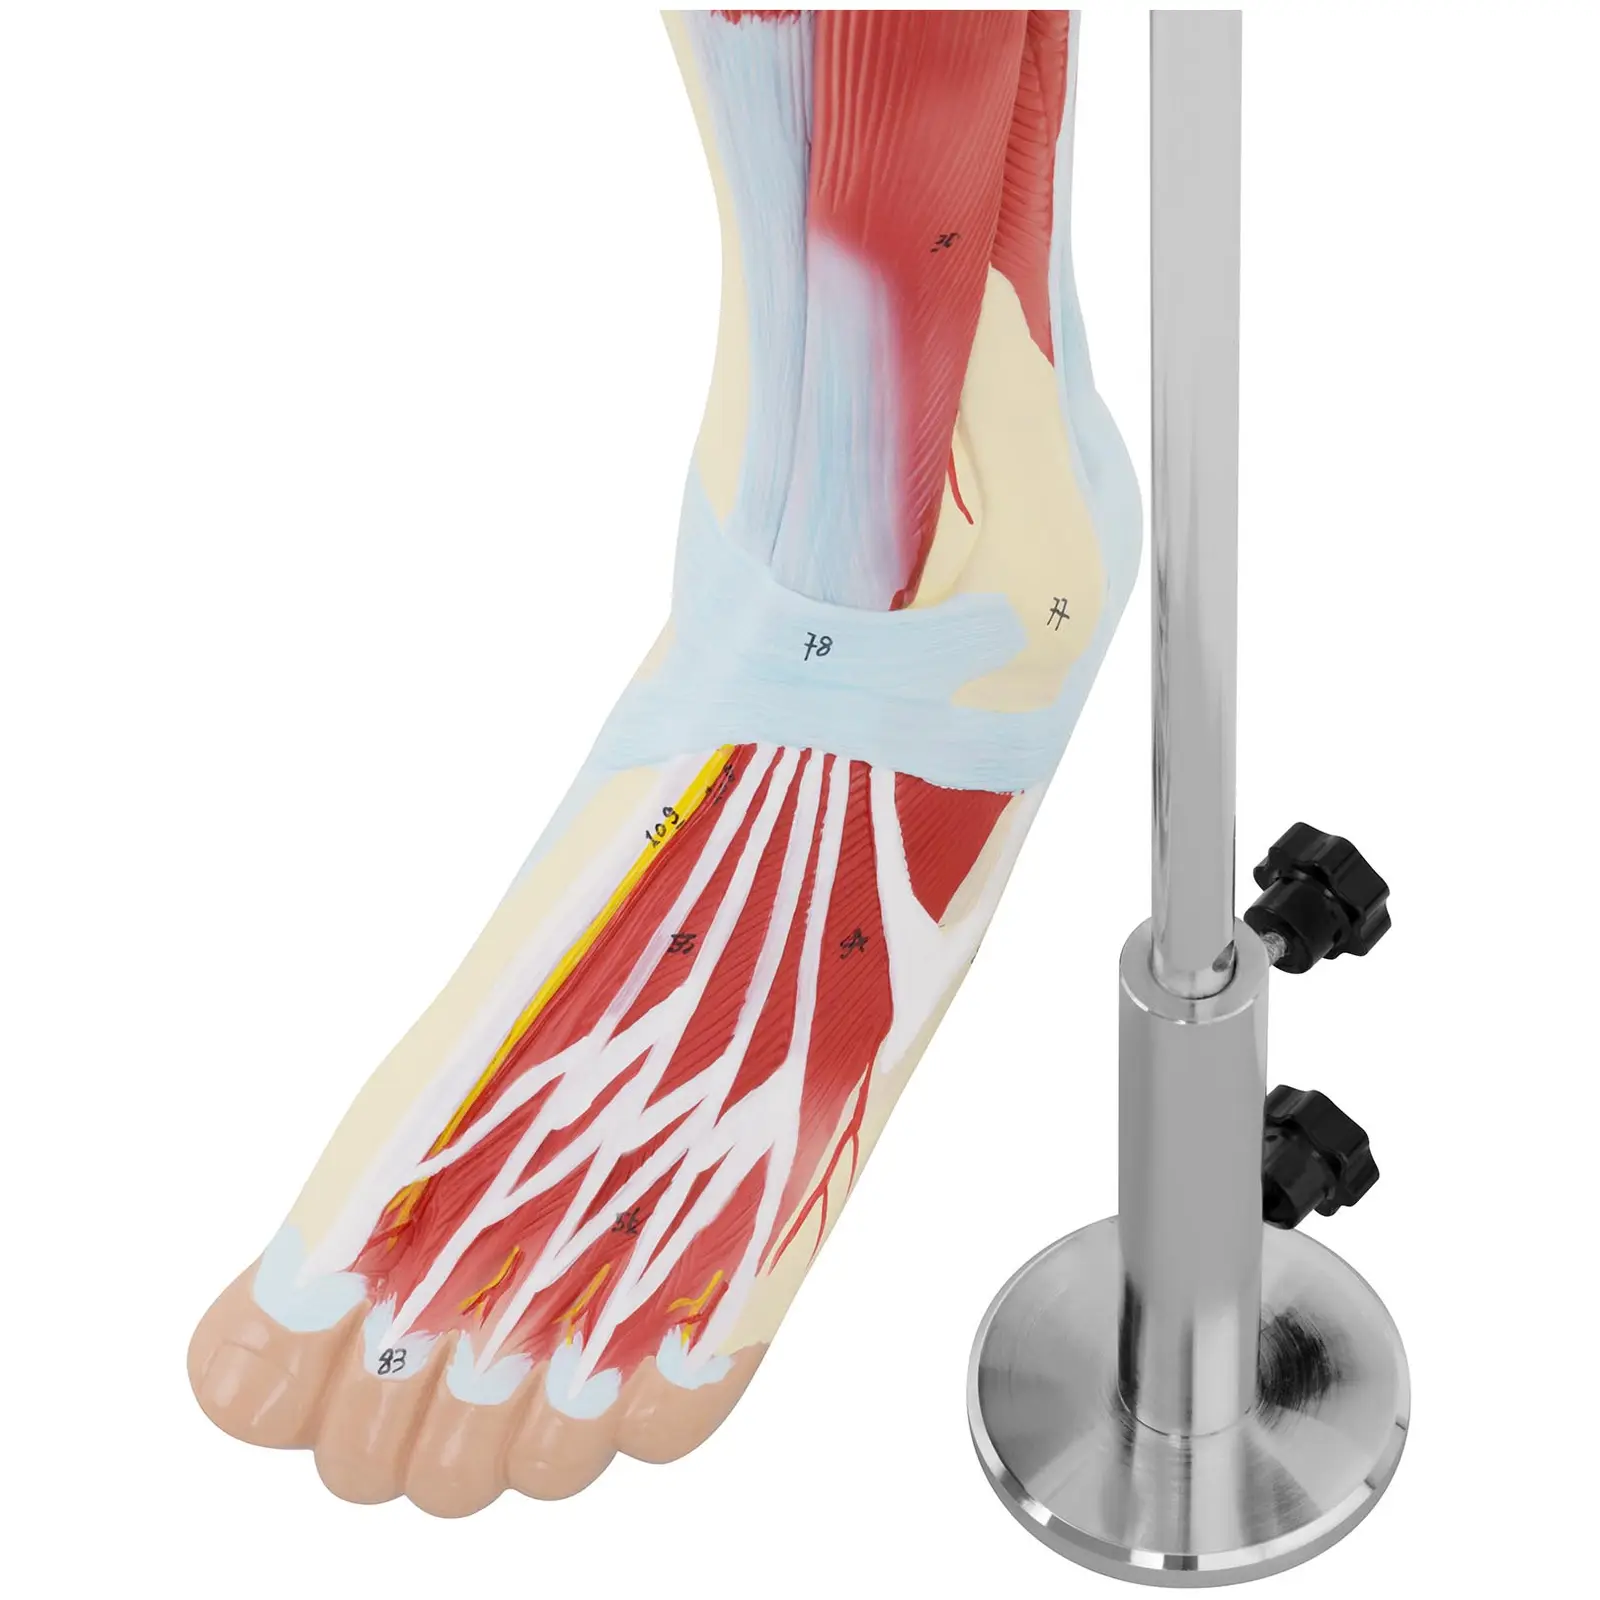 Model de picior - Mușchii piciorului - Colorat